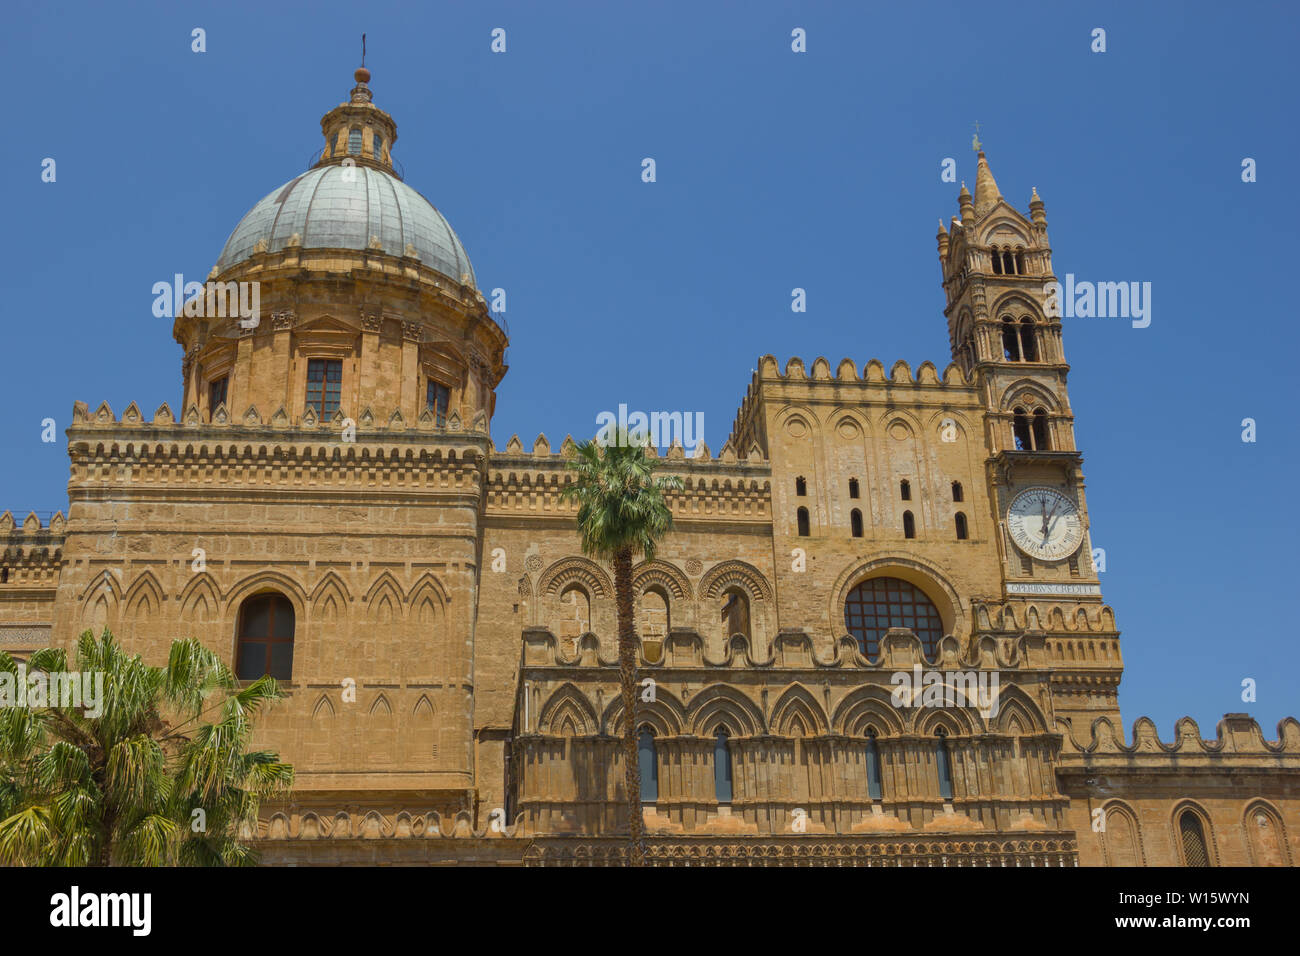 Histórica catedral de Palermo, Sicilia, vista en detalle de la cúpula y el reverso con la campana de la torre con reloj Foto de stock